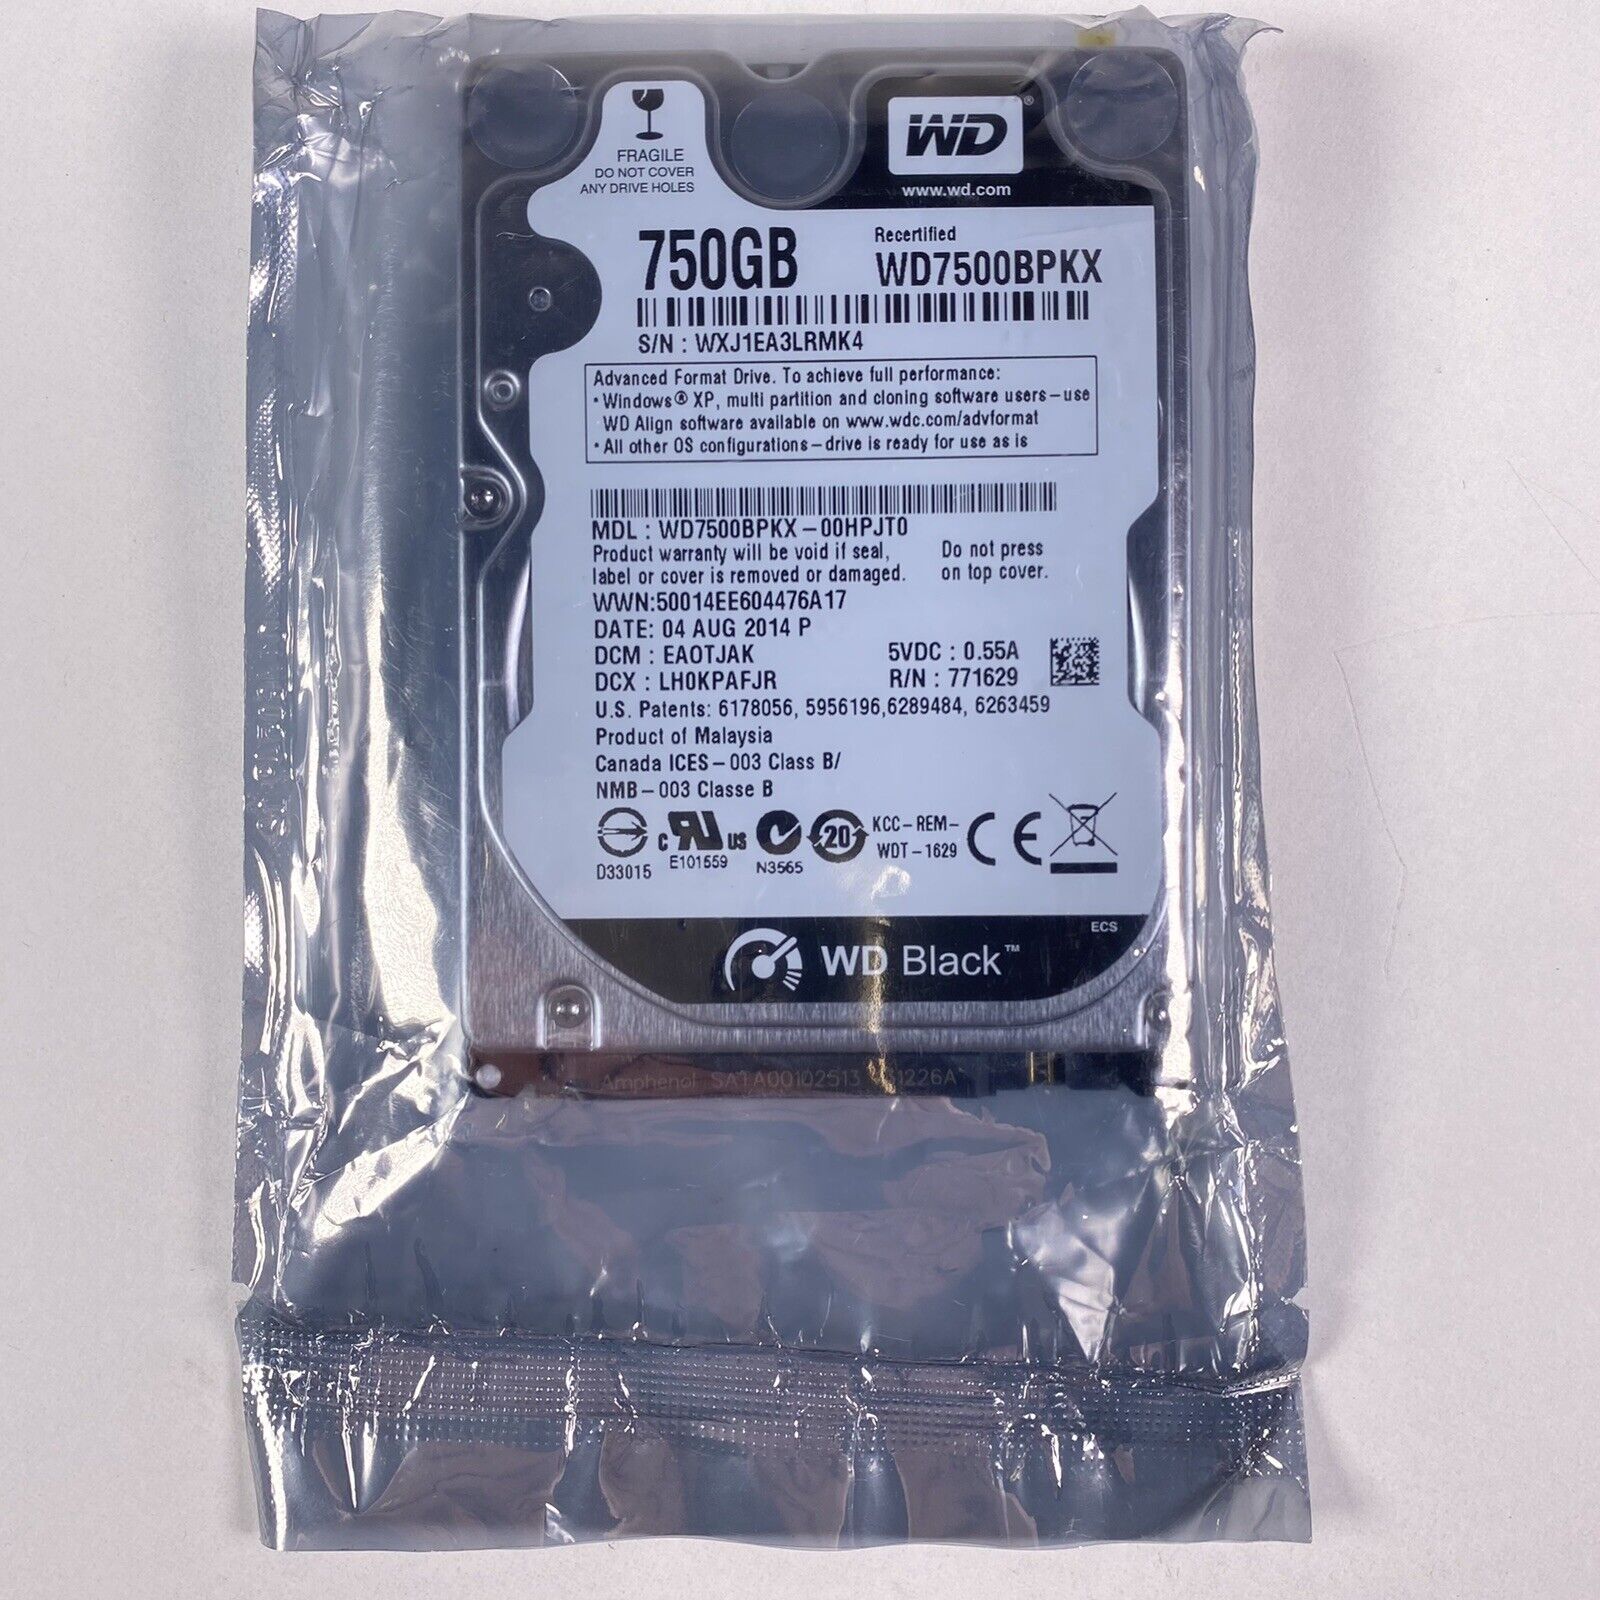 WD Black 750GB WD7500BPKX 2.5